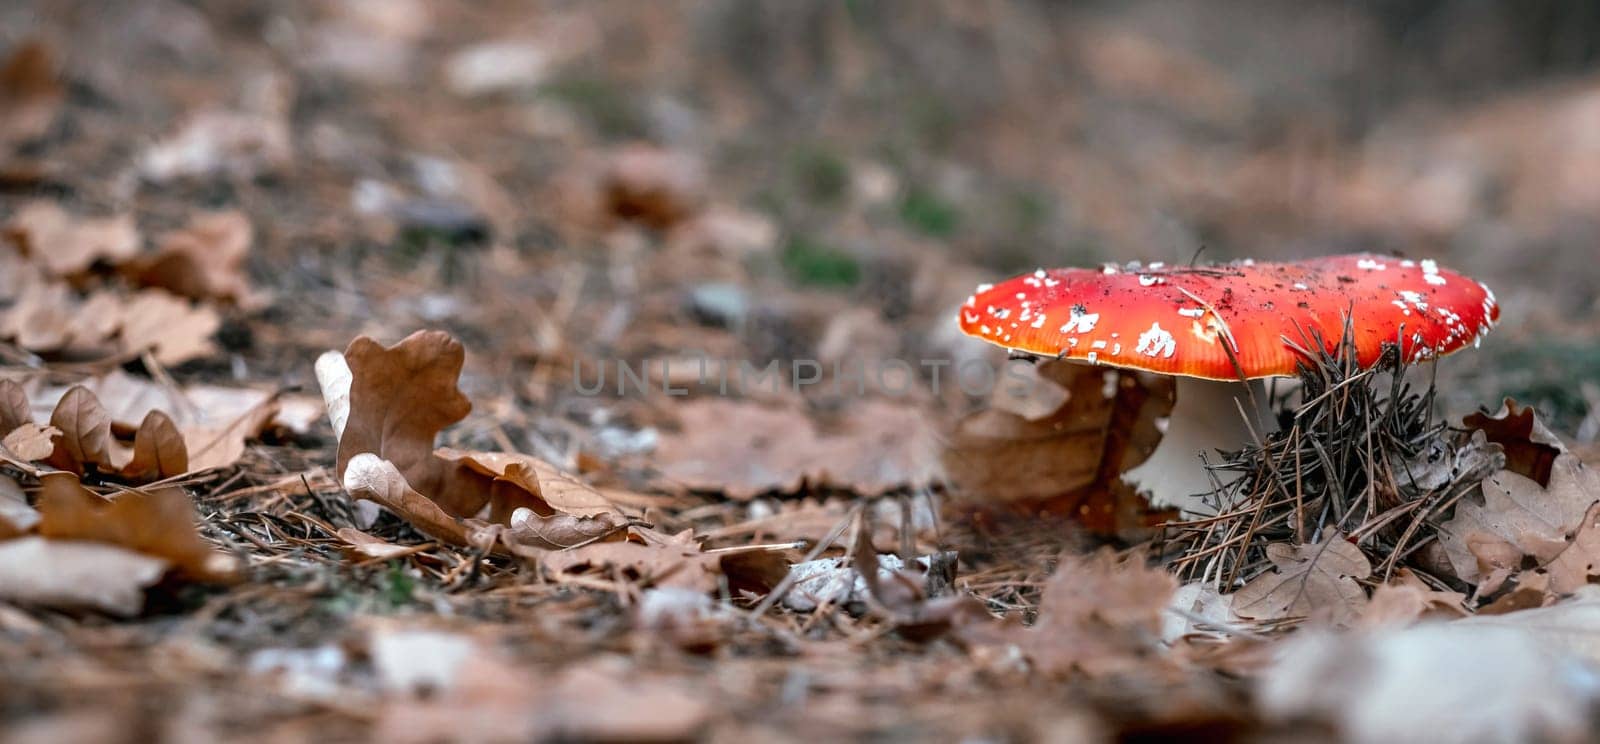 Fly agaric mushroom in the wood by GekaSkr